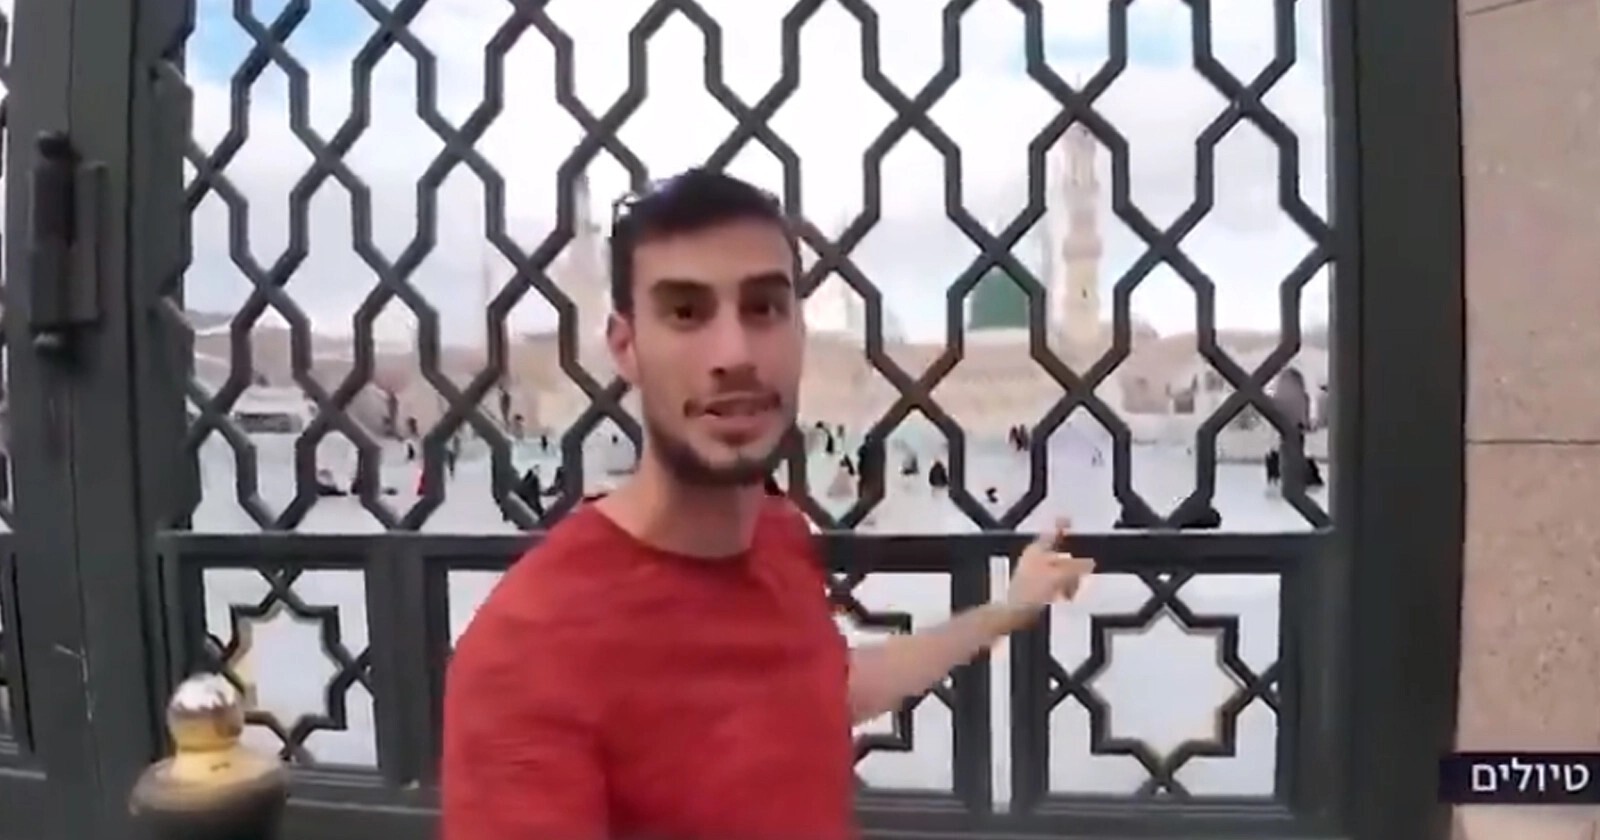 صحفي إسرائيلي يدخل المدينة المنورة ويصور بالقرب من المسجد النبوي الشريف